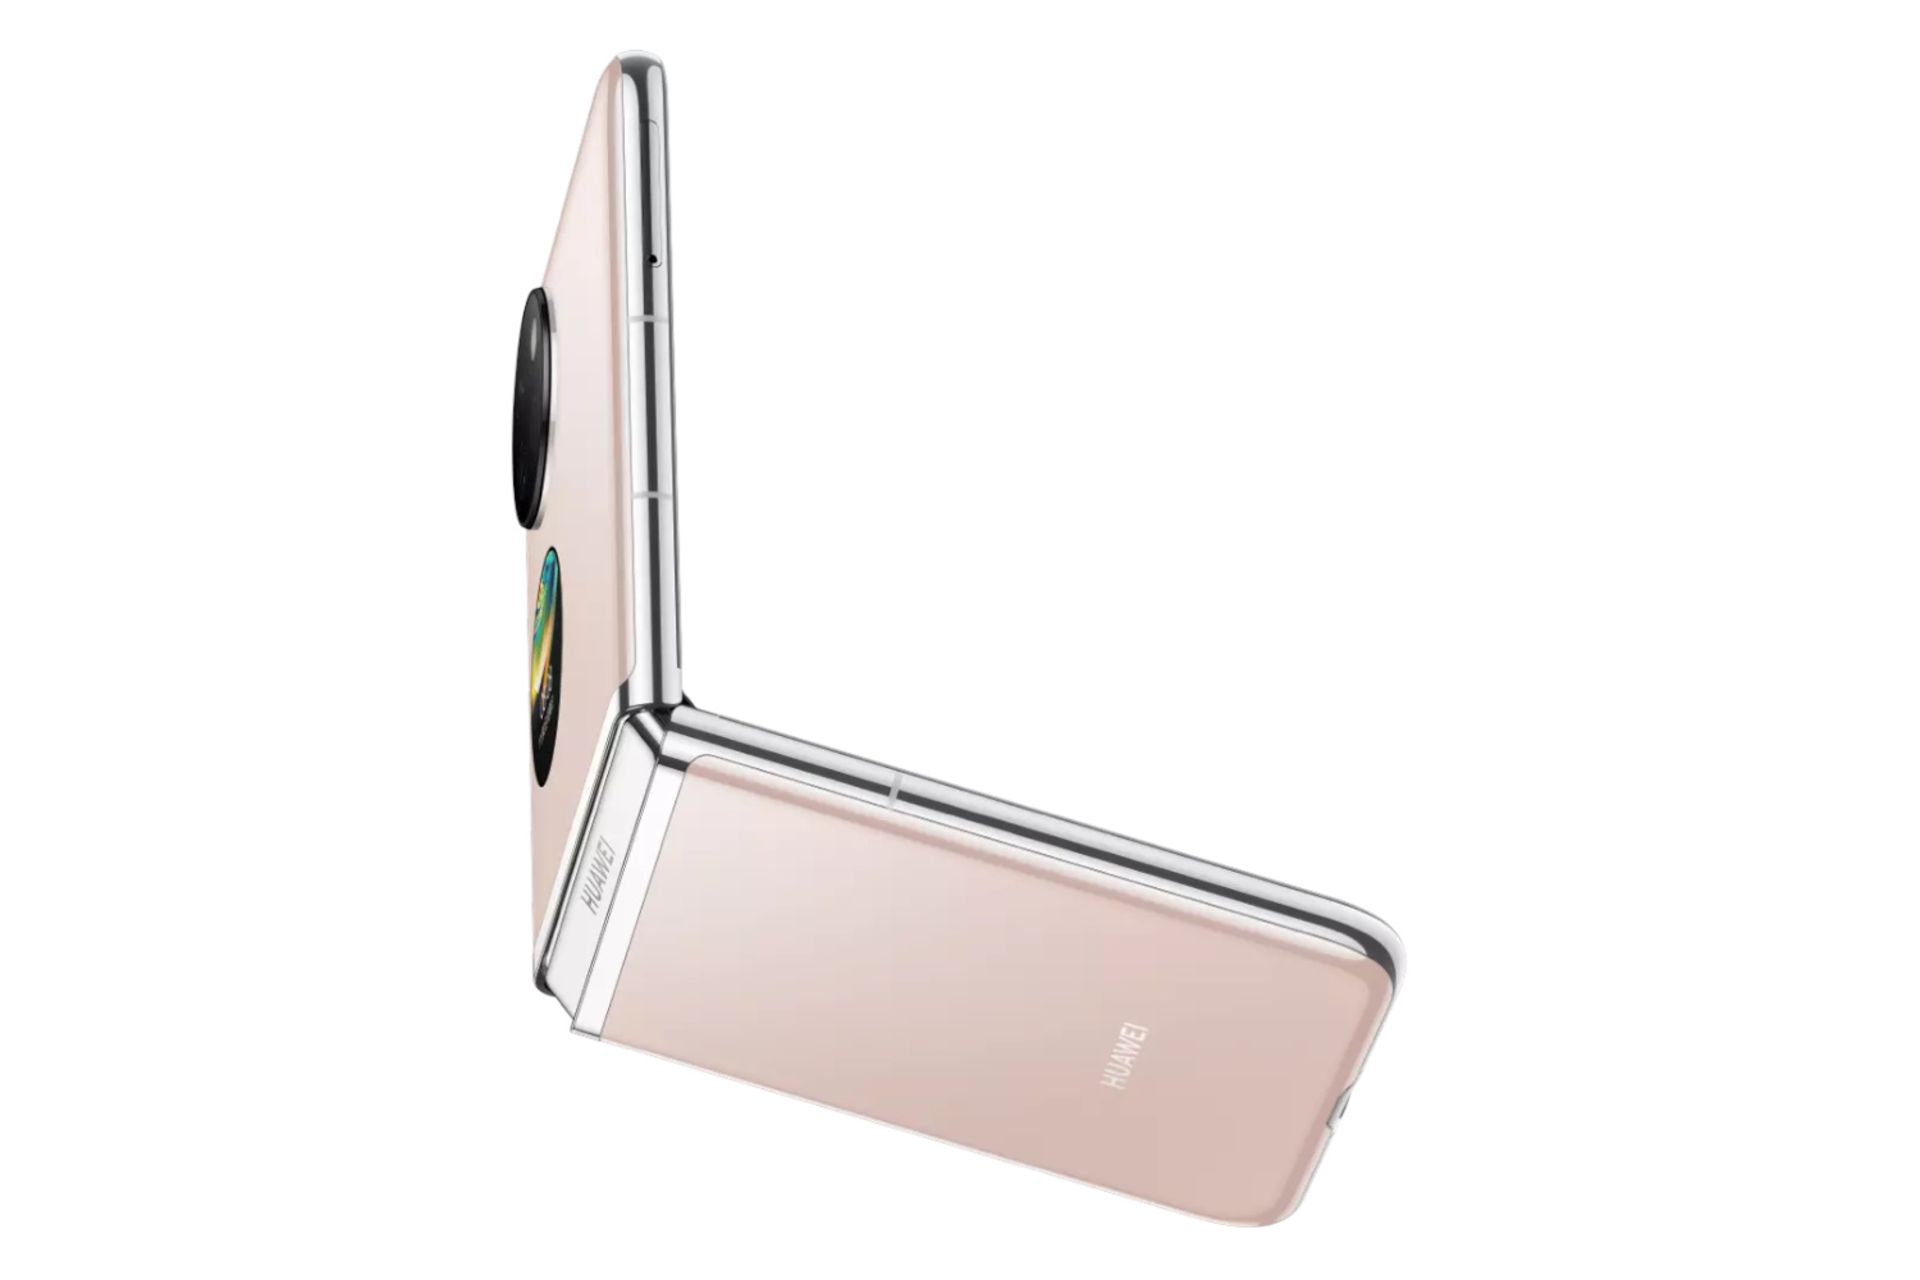 گوشی موبایل پاکت اس هواوی / Huawei Pocket S صورتی